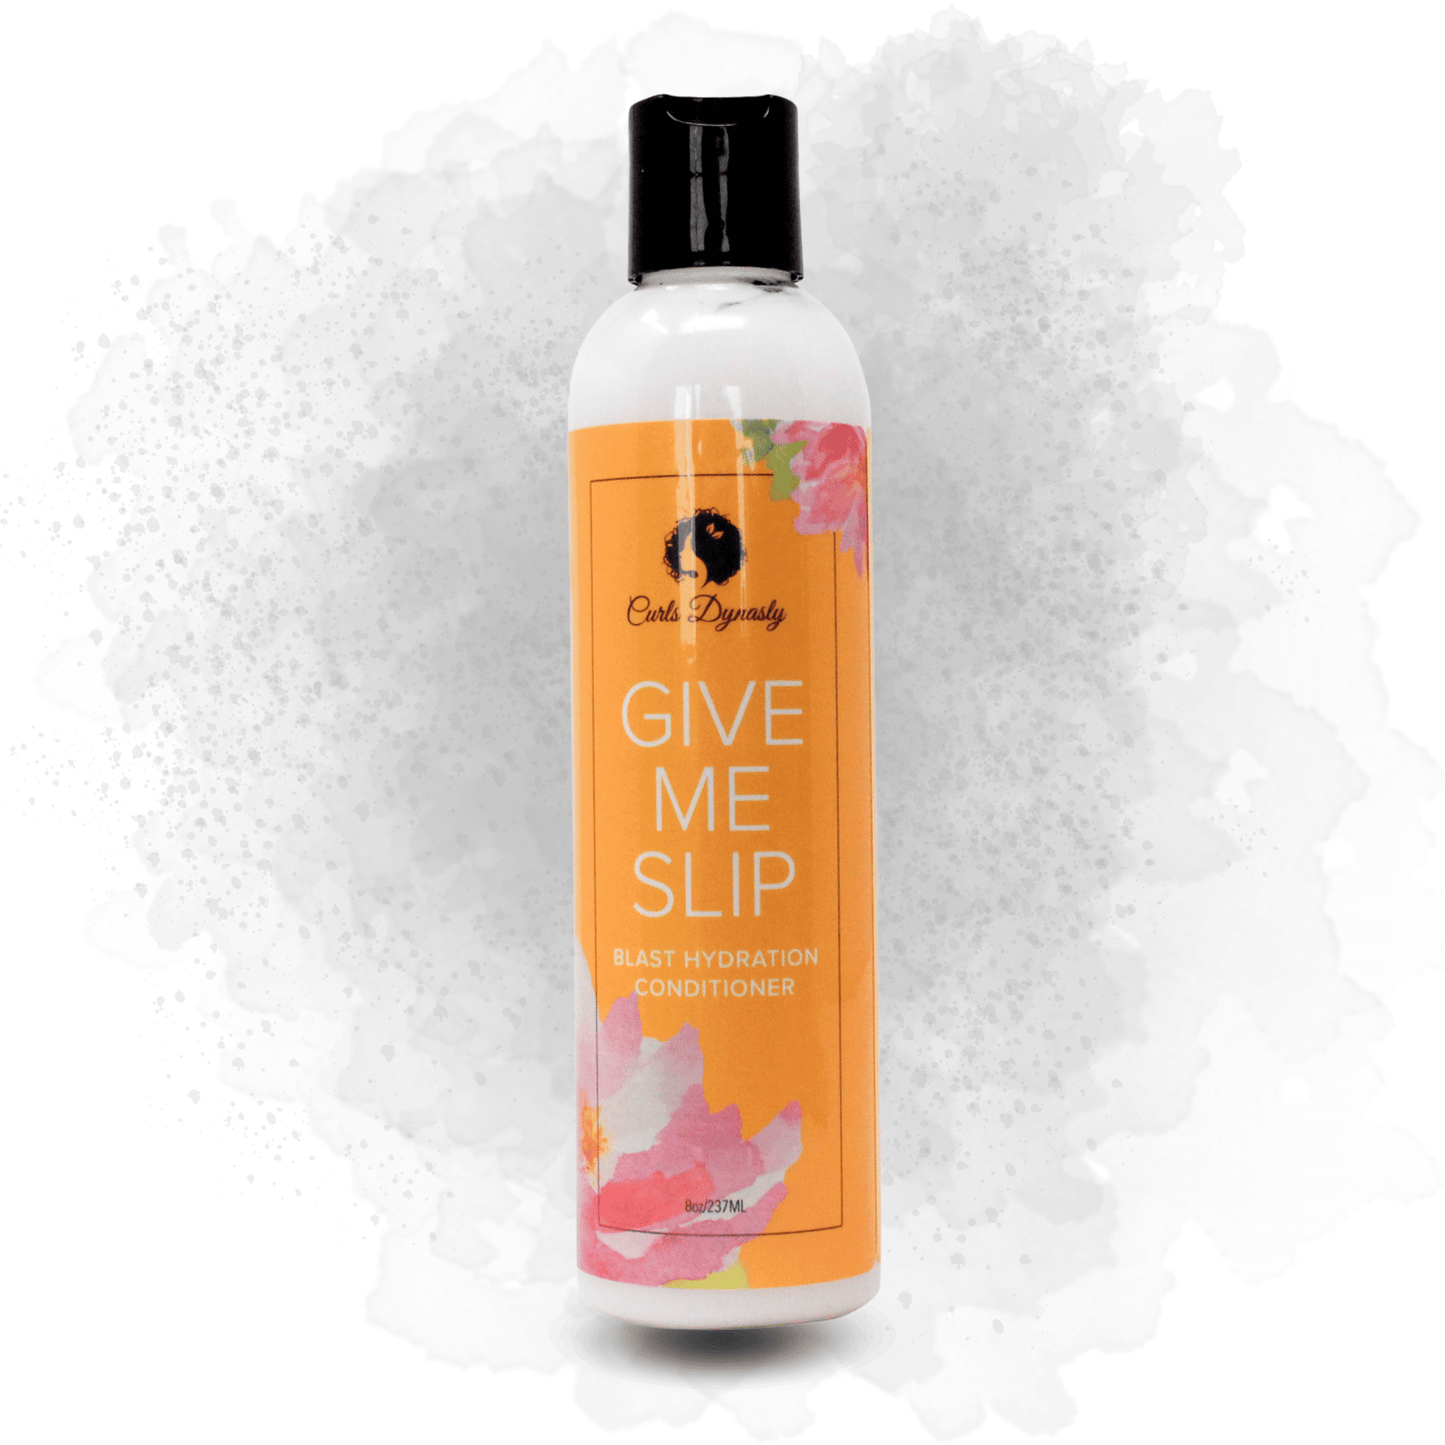 Curls Dynasty - Aprés-shampoing hydratant "Give me slip" - 237ml - Curls Dynasty - Ethni Beauty Market